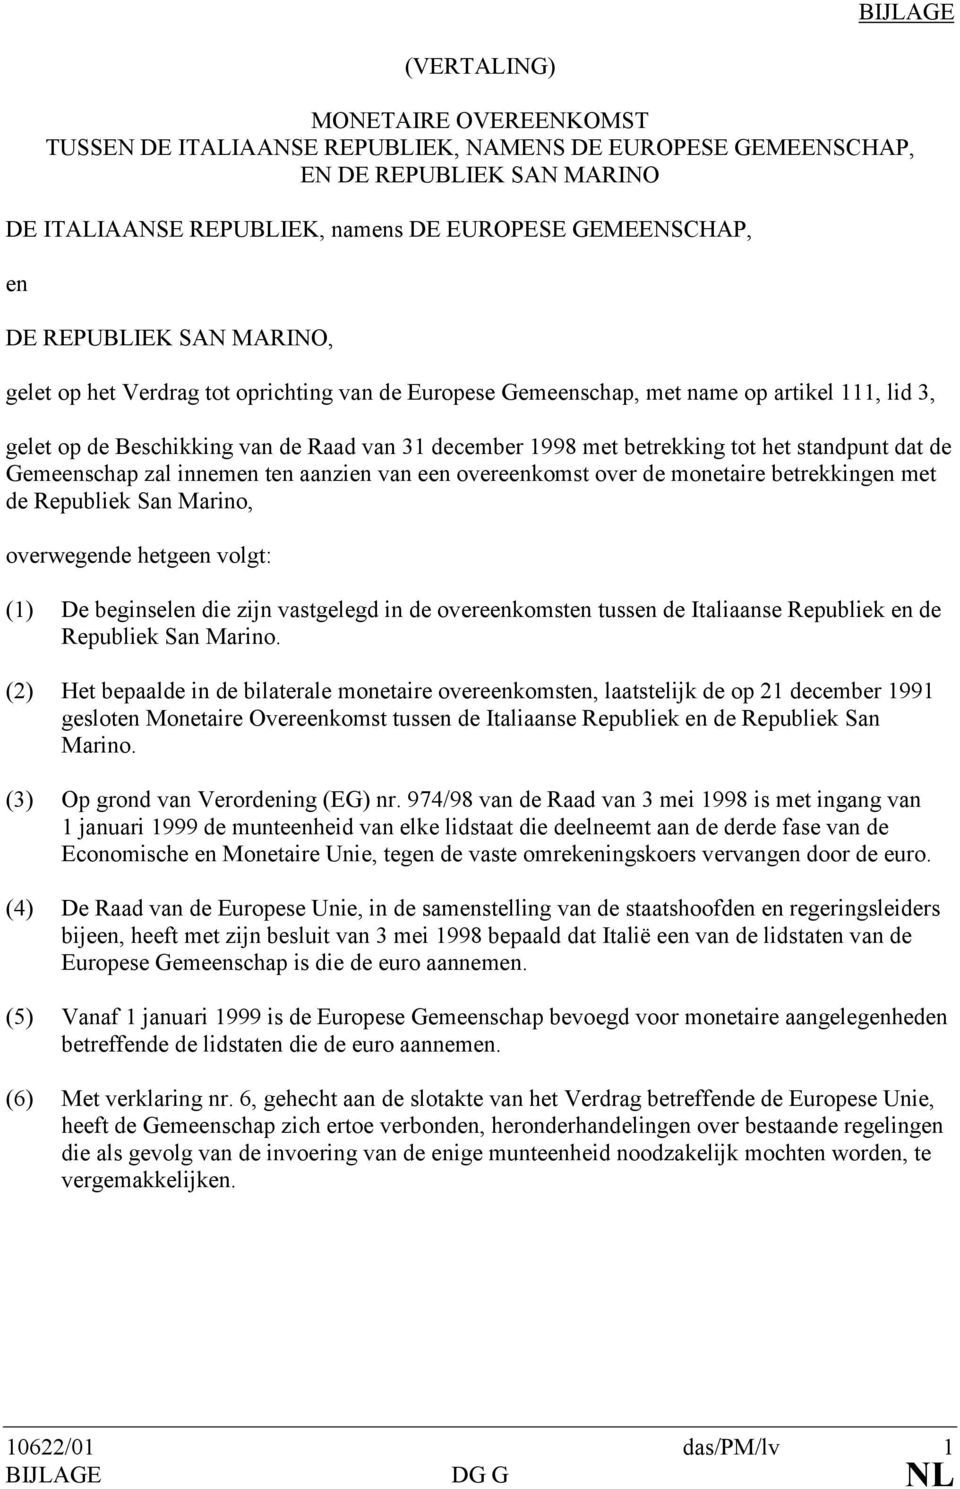 standpunt dat de Gemeenschap zal innemen ten aanzien van een overeenkomst over de monetaire betrekkingen met de Republiek San Marino, overwegende hetgeen volgt: (1) De beginselen die zijn vastgelegd